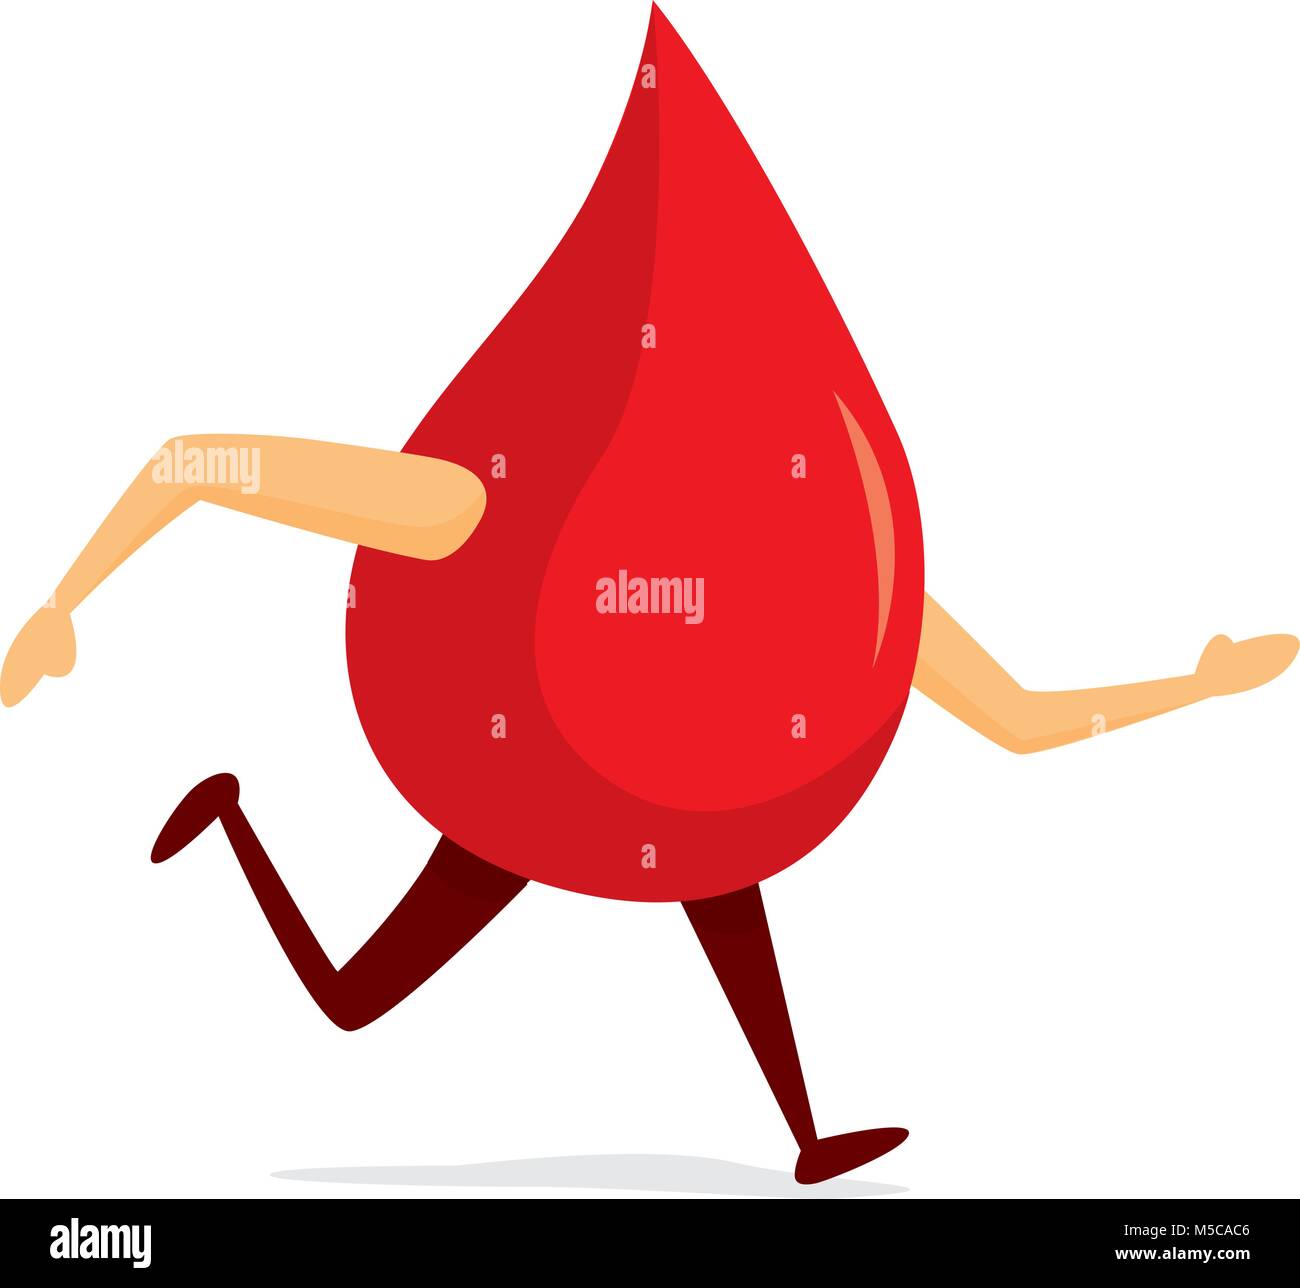 Ilustración de dibujos animados de sangre caiga sobre la marcha Ilustración del Vector